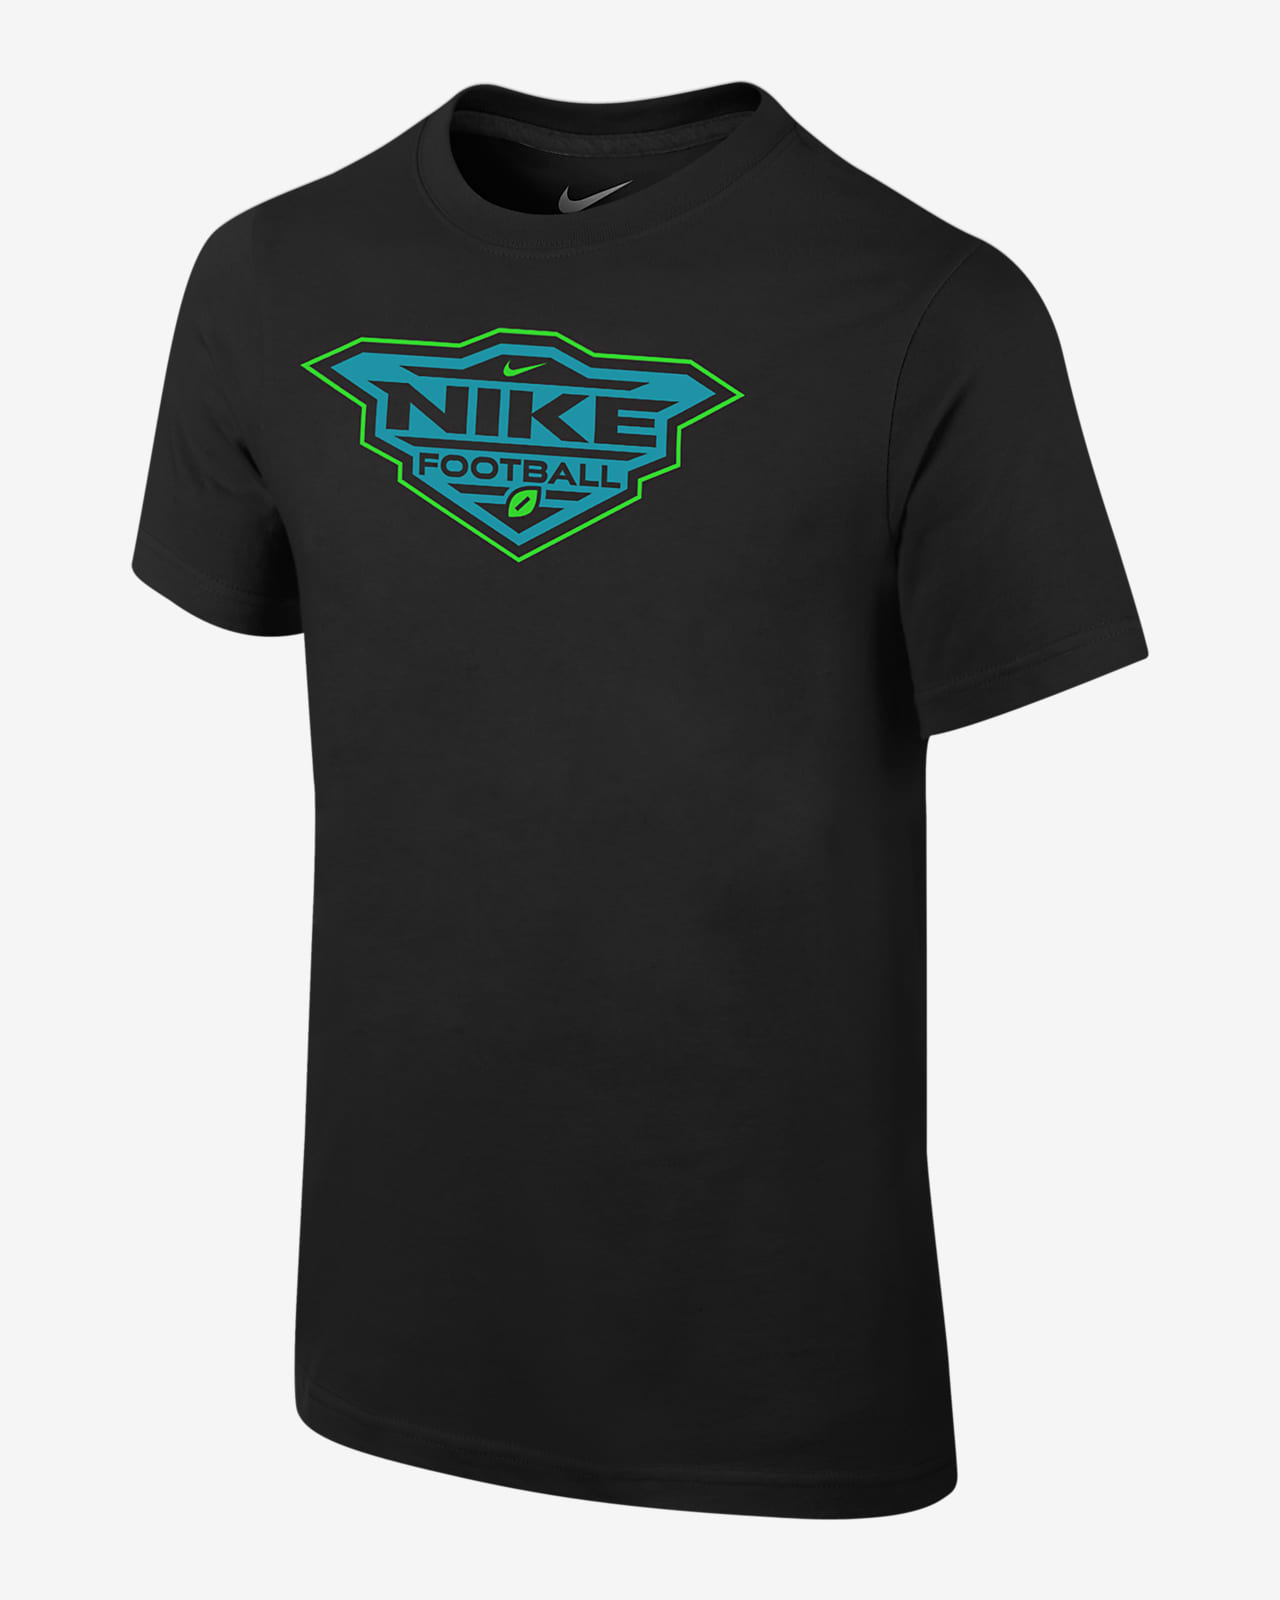 Nike Football Big Kids' (Boys') Dri-FIT T-Shirt